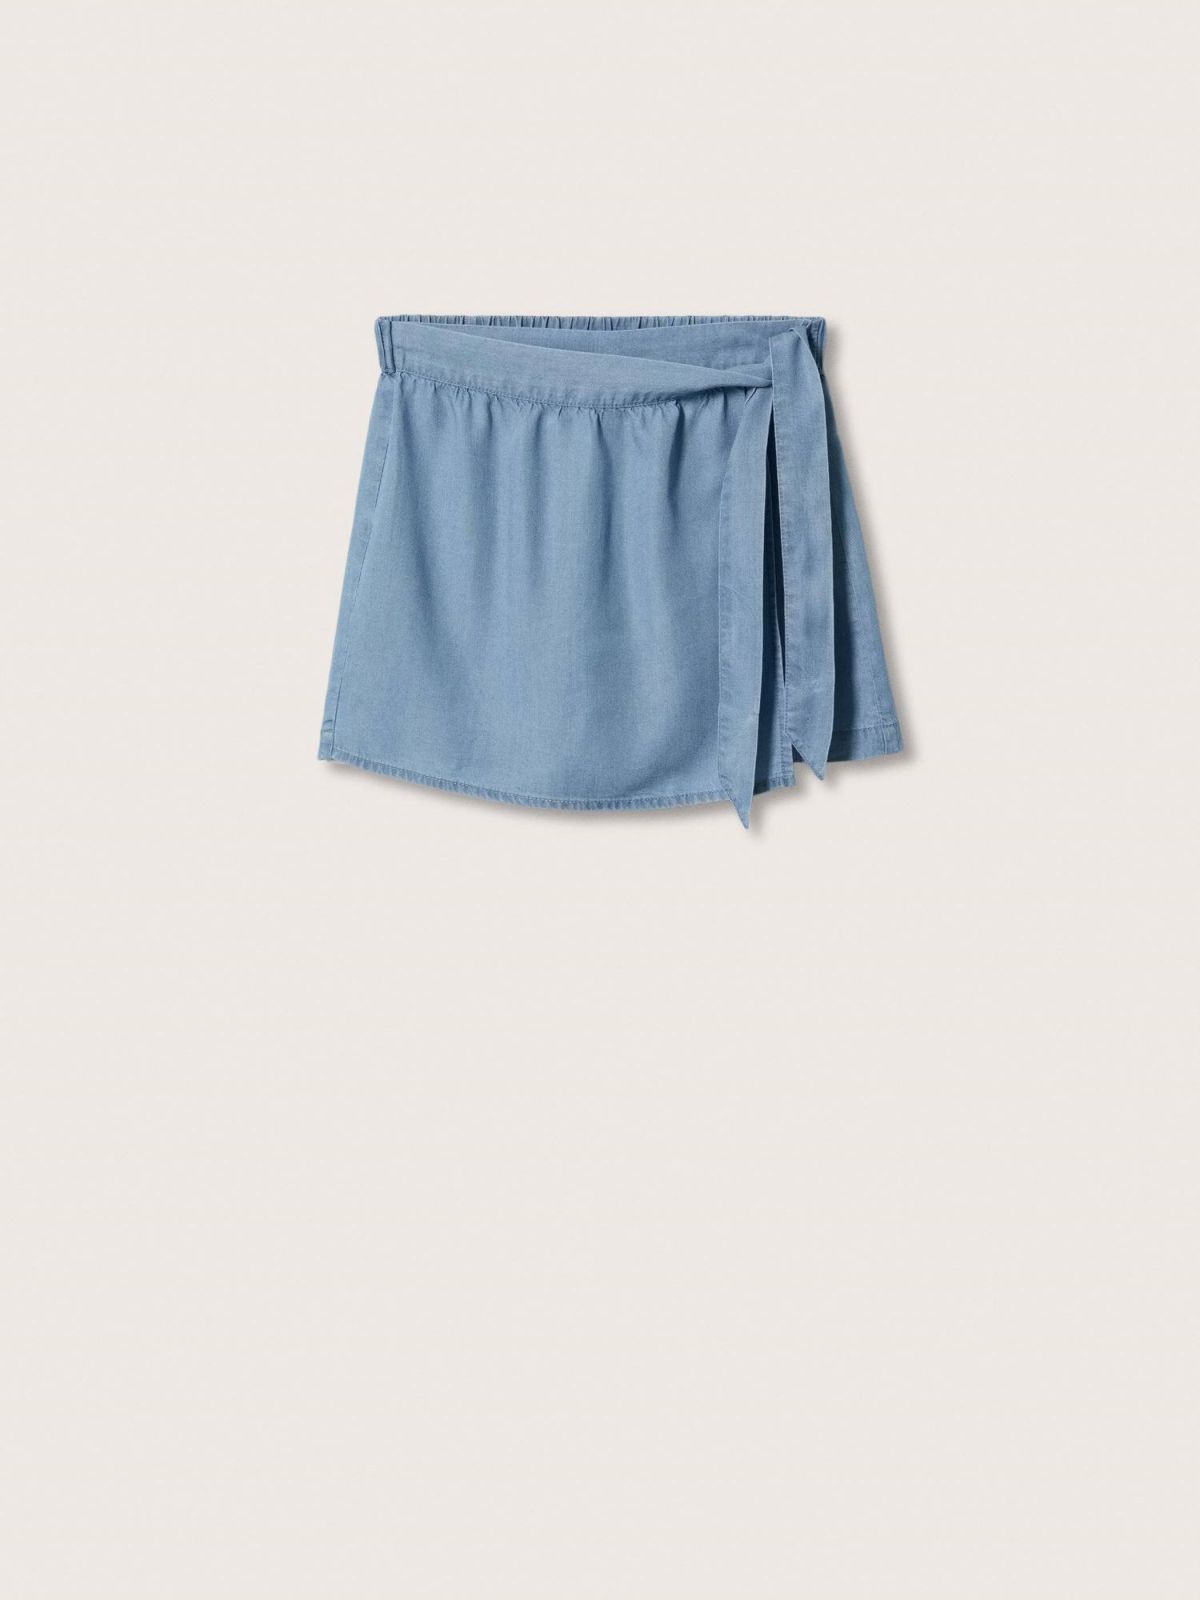  מכנס ג'ינס דמוי חצאית / בנות של MANGO